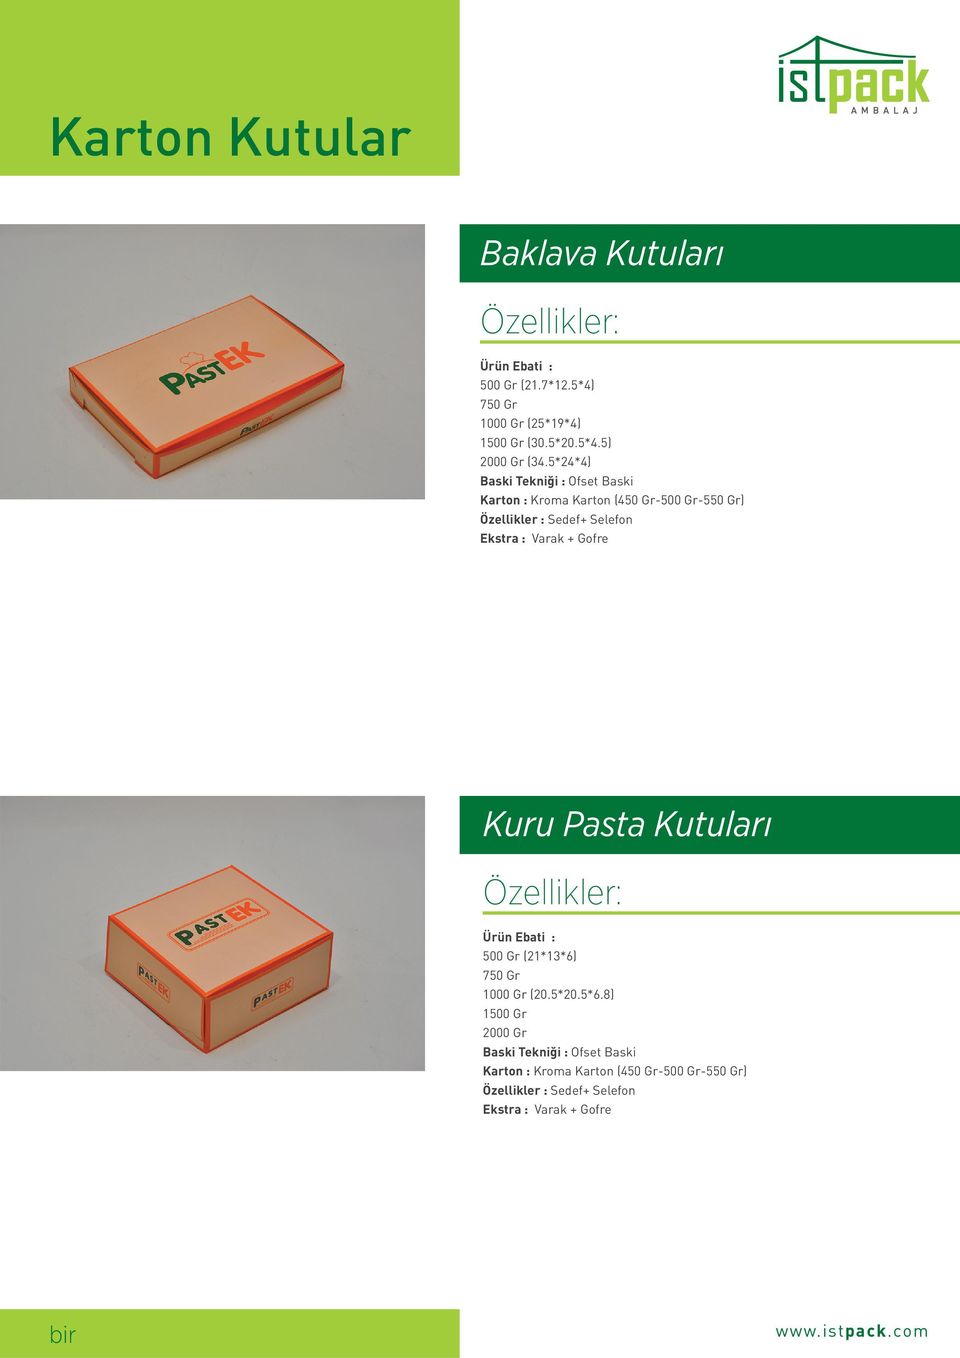 Varak + Gofre Kuru Pasta Kutuları Ürün Ebati : 500 Gr (21*13*6) 750 Gr 1000 Gr (20.5*20.5*6.